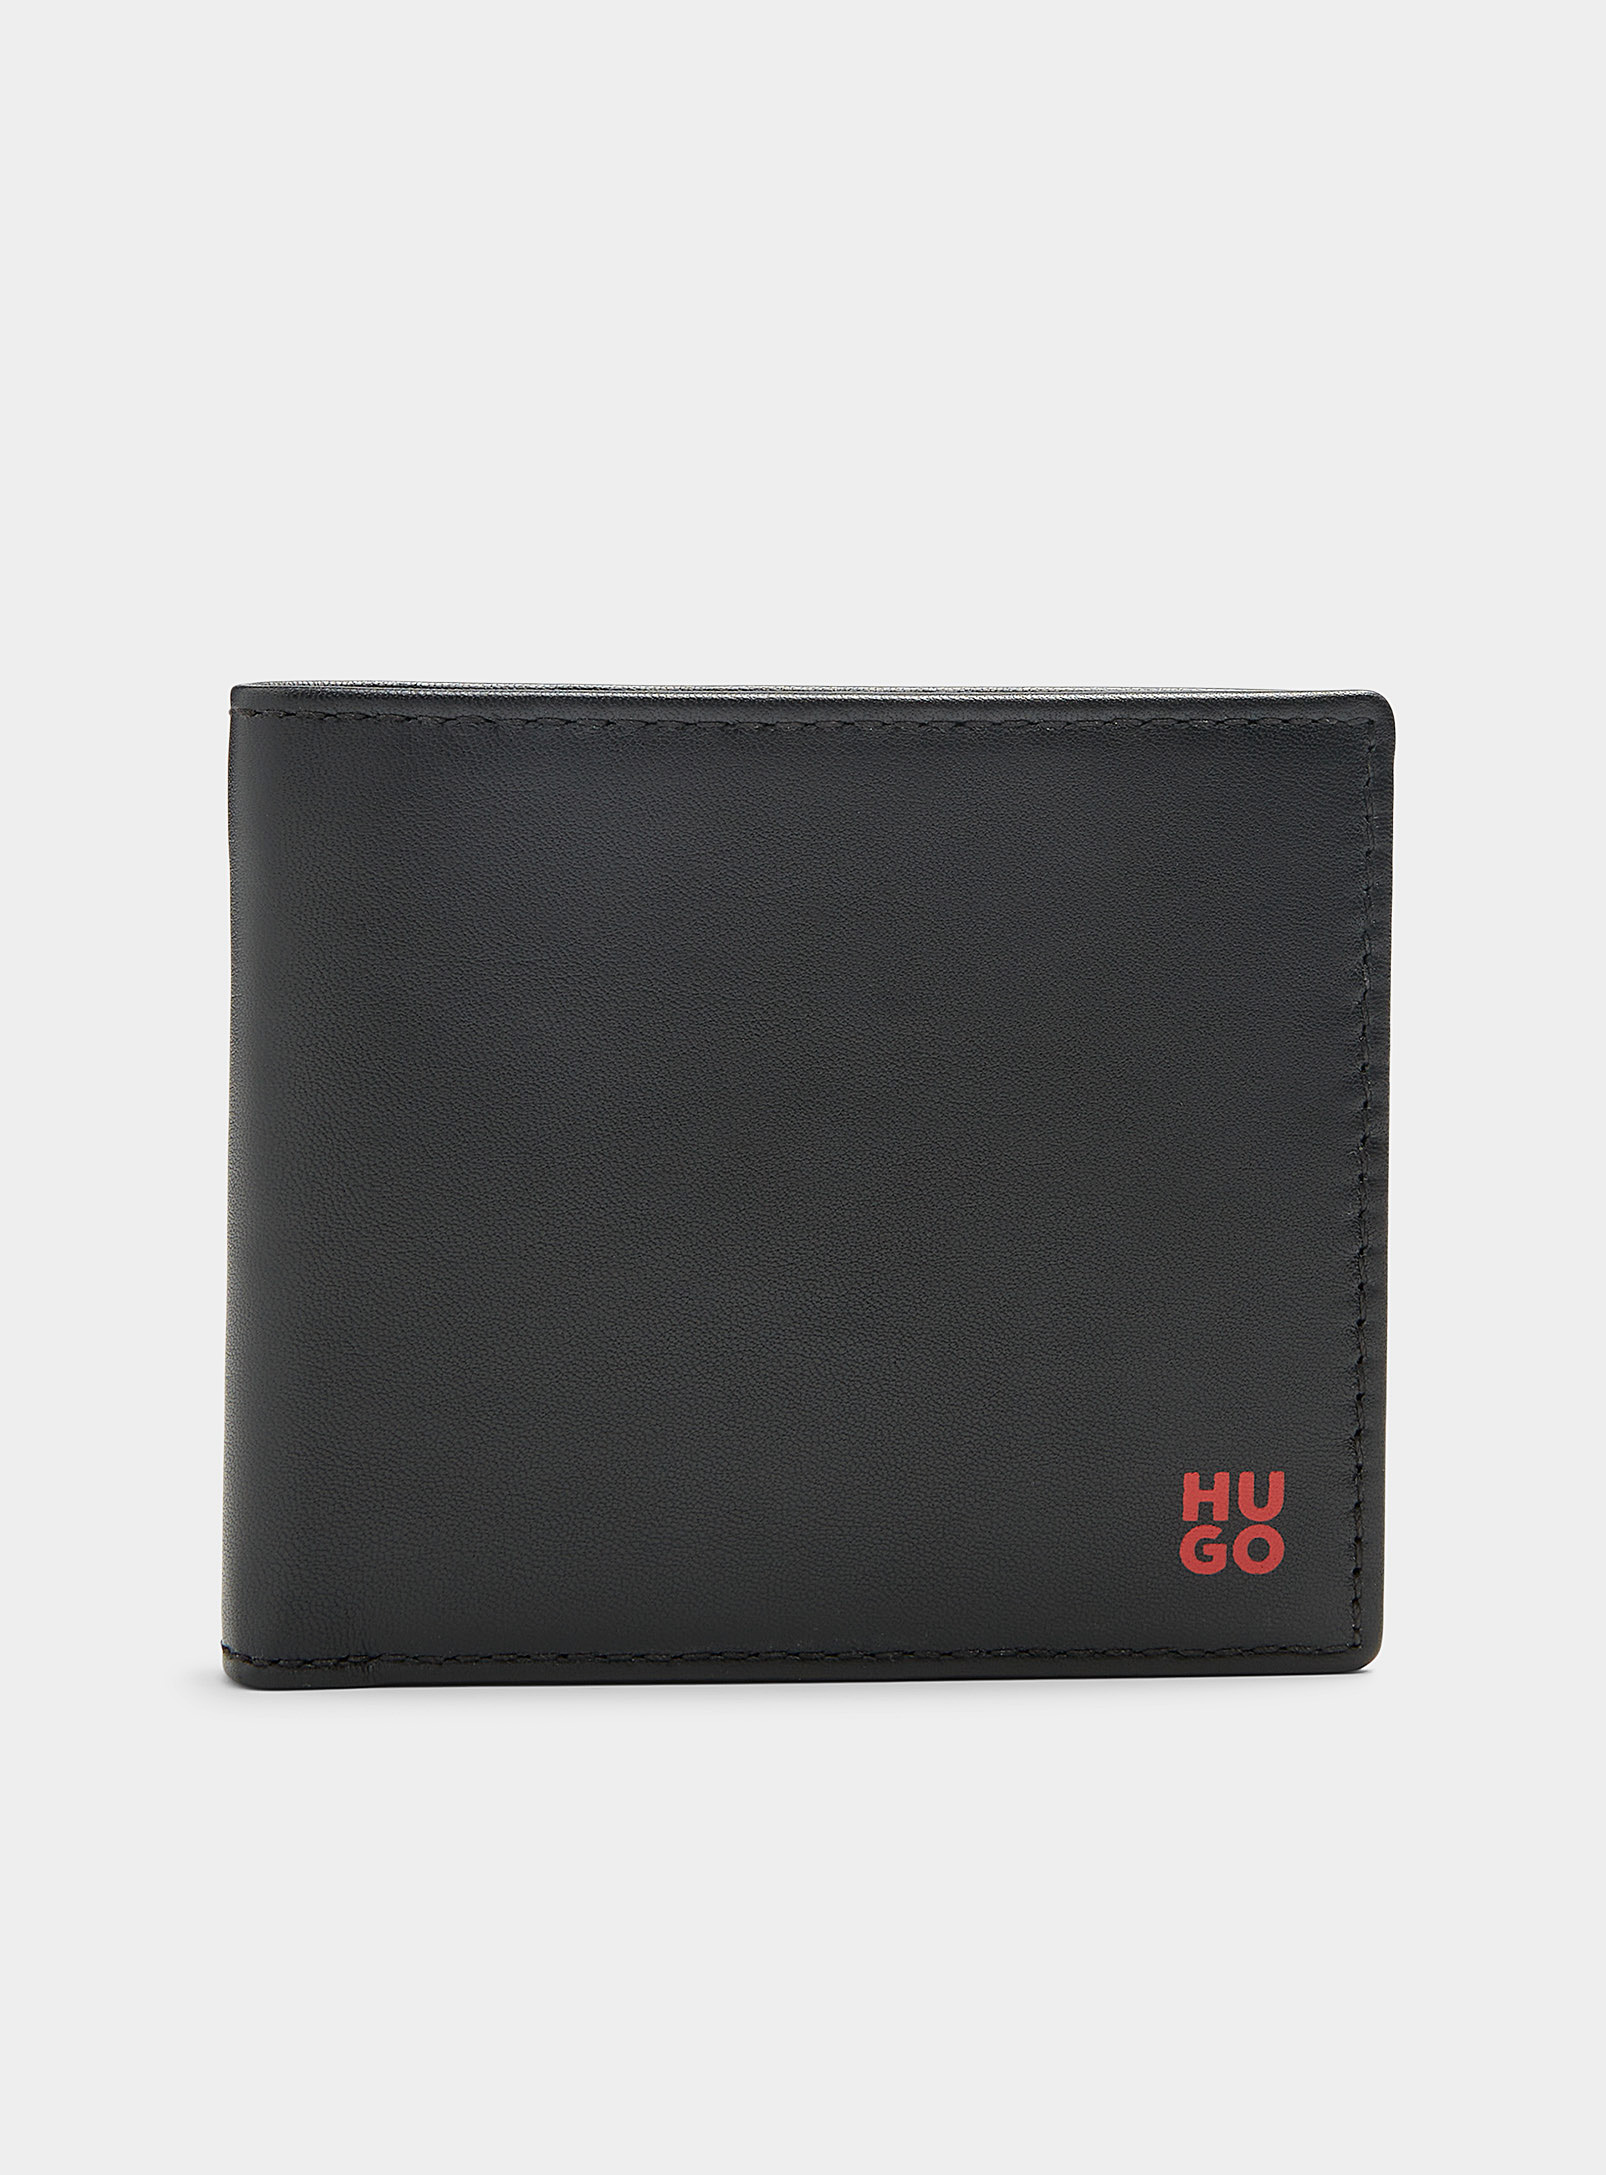 HUGO - Le portefeuille cuir noir logo rouge